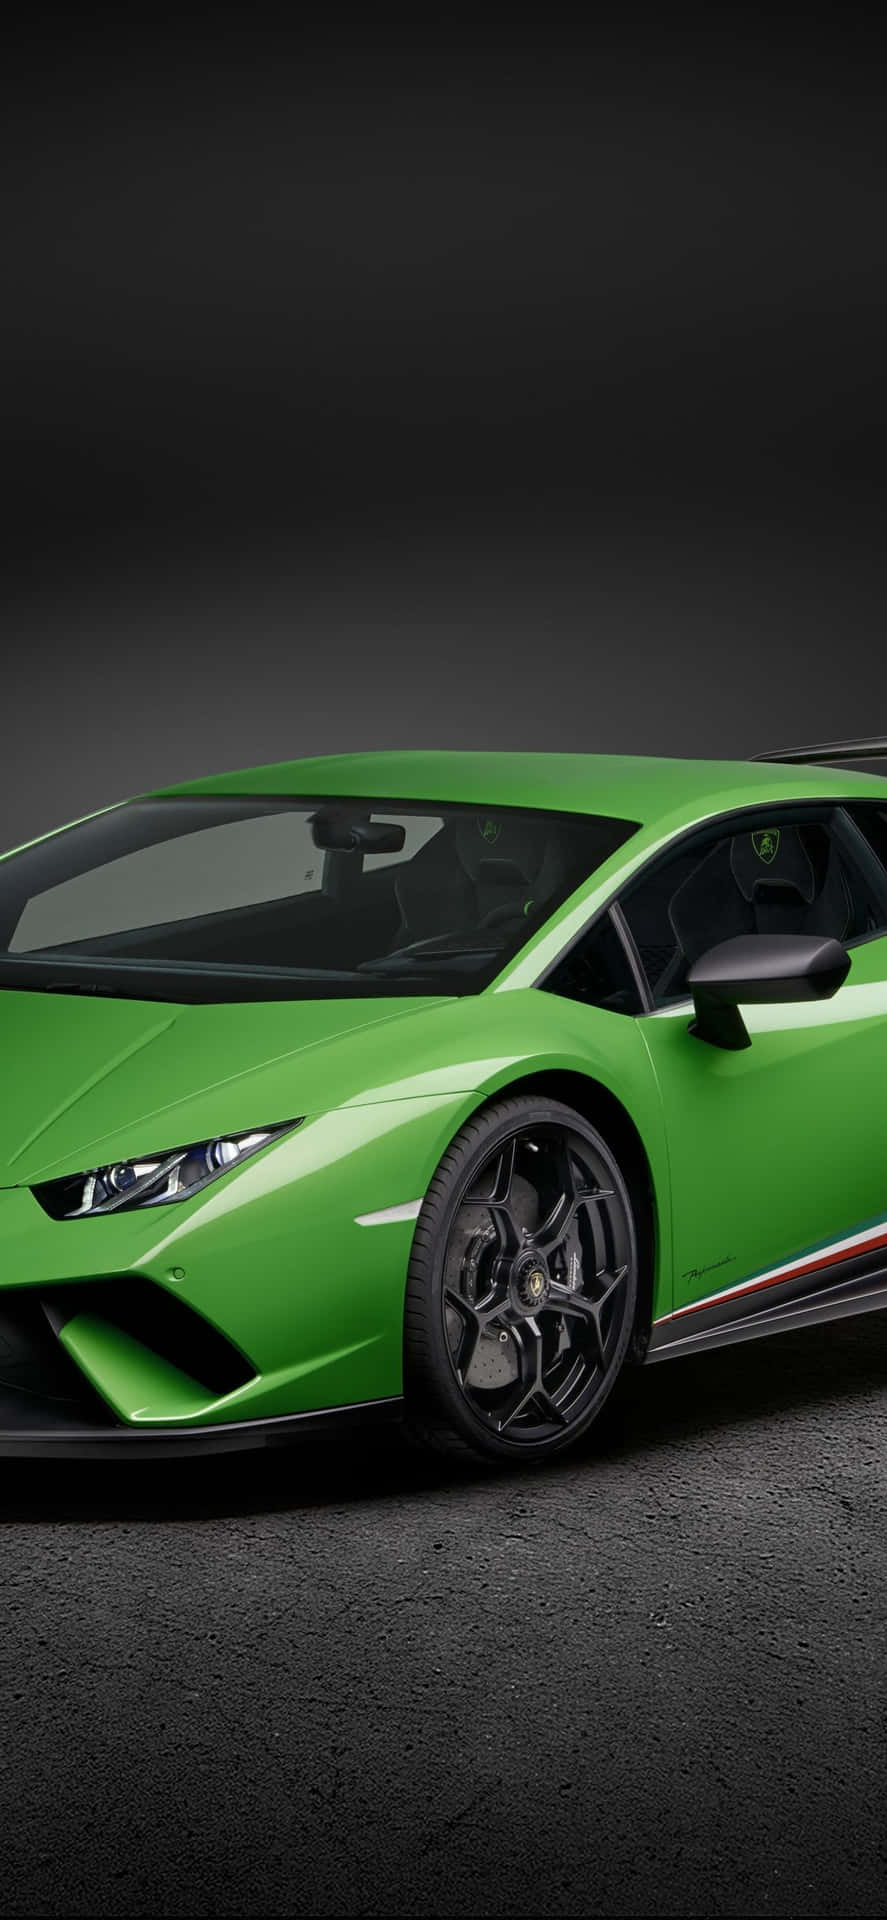 Tadin Resa Till Nästa Nivå Med En Grön Lamborghini-iphone. Wallpaper